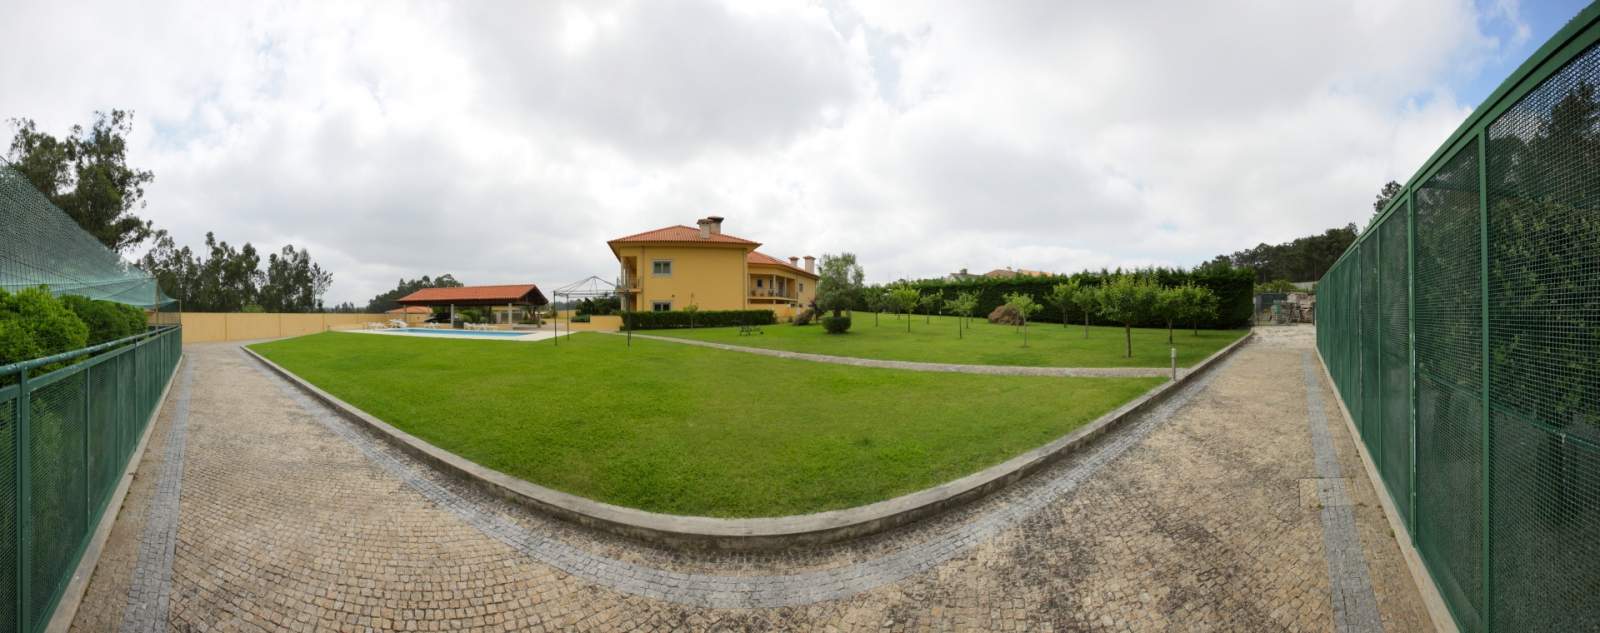 Villa mit Pool und Garten, zu verkaufen, in Póvoa de Varzim, Portugal_22667